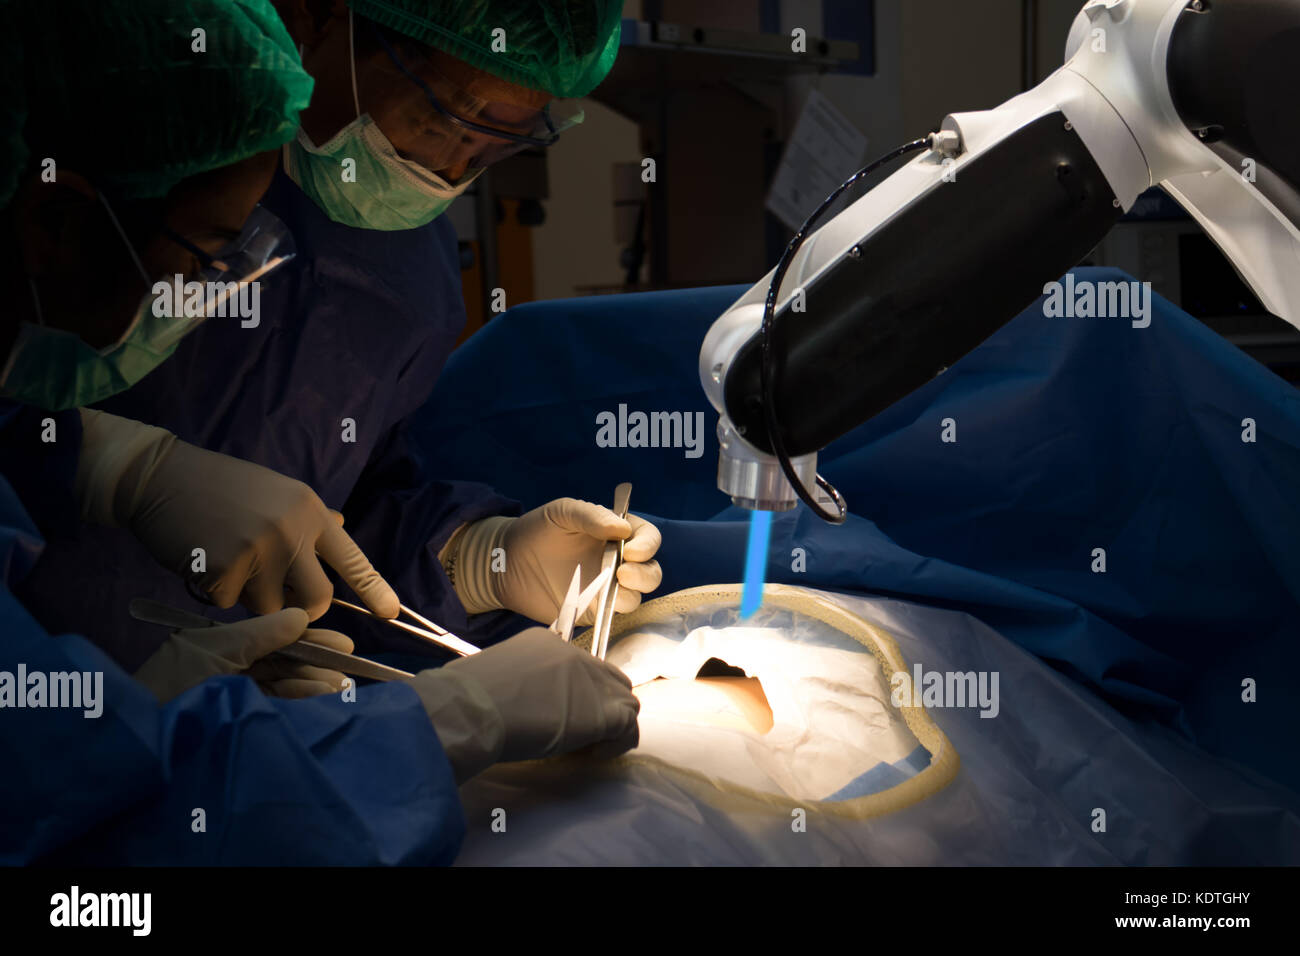 Erweiterte Roboterchirurgie Maschine am Krankenhaus, Arzt Vorteile der Roboterchirurgie sind Präzision und Miniaturisierung, kleinere Schnitte, weniger blo Stockfoto